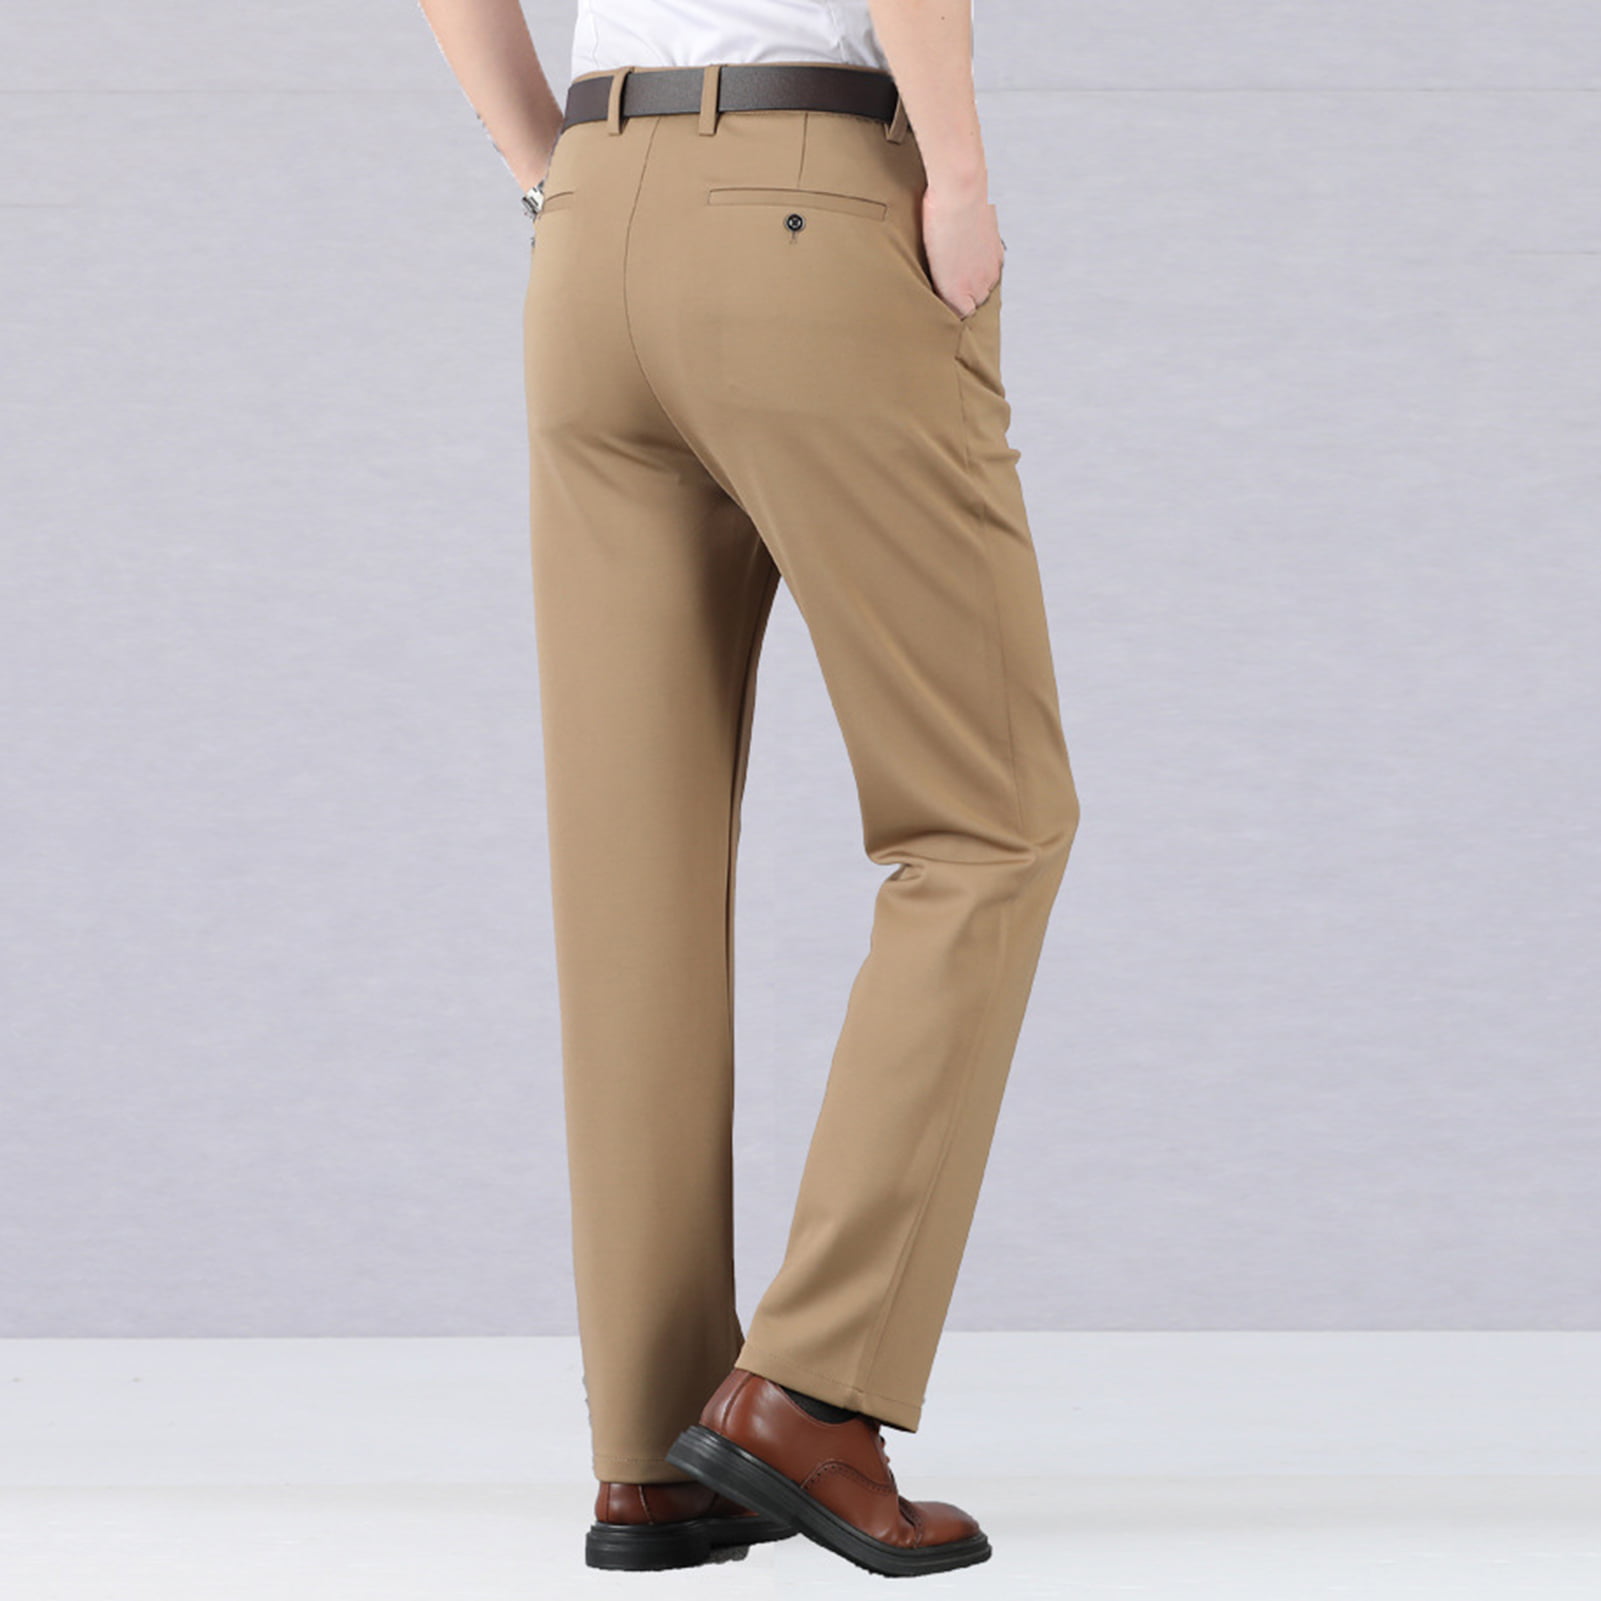 Men Formal Dress Pants Cotton Straight Leg Business Trousers High Waist New 